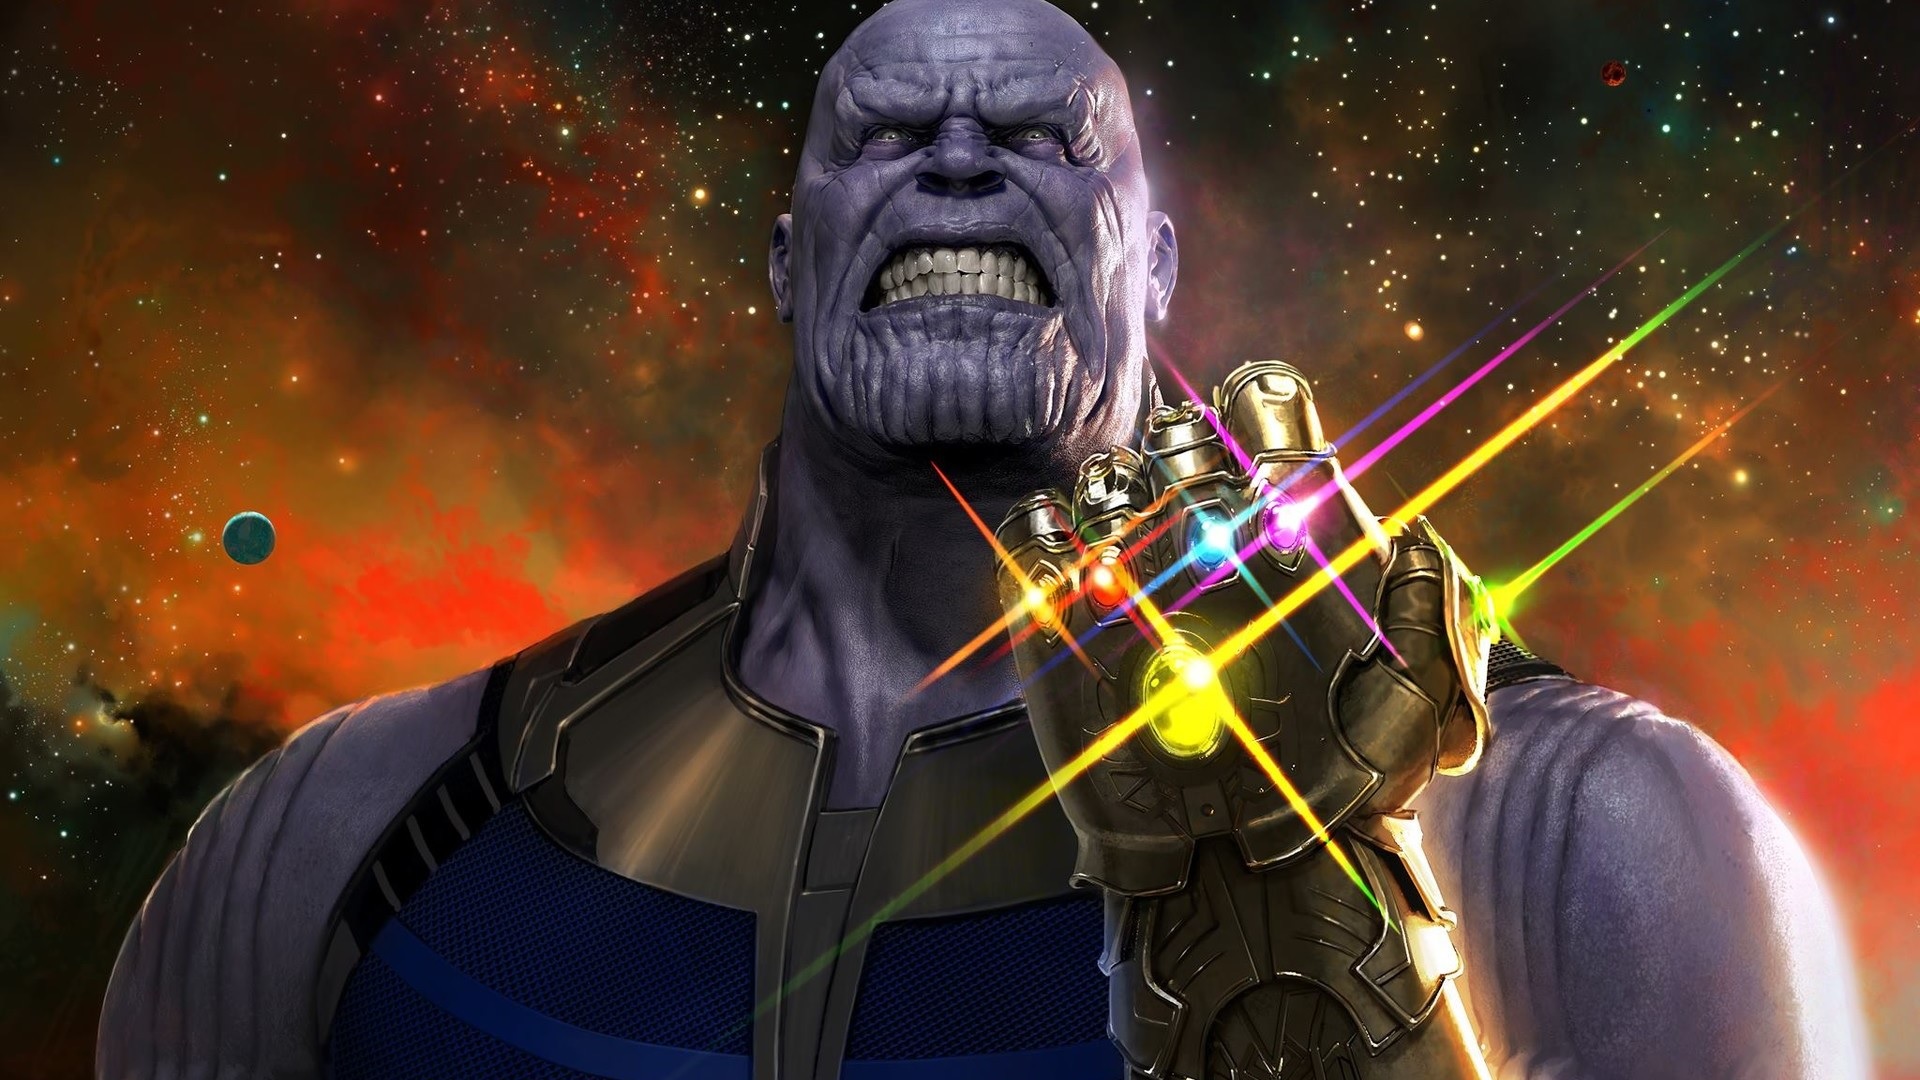 Промо-кадр "Войны бесконечности" с изображением Таноса